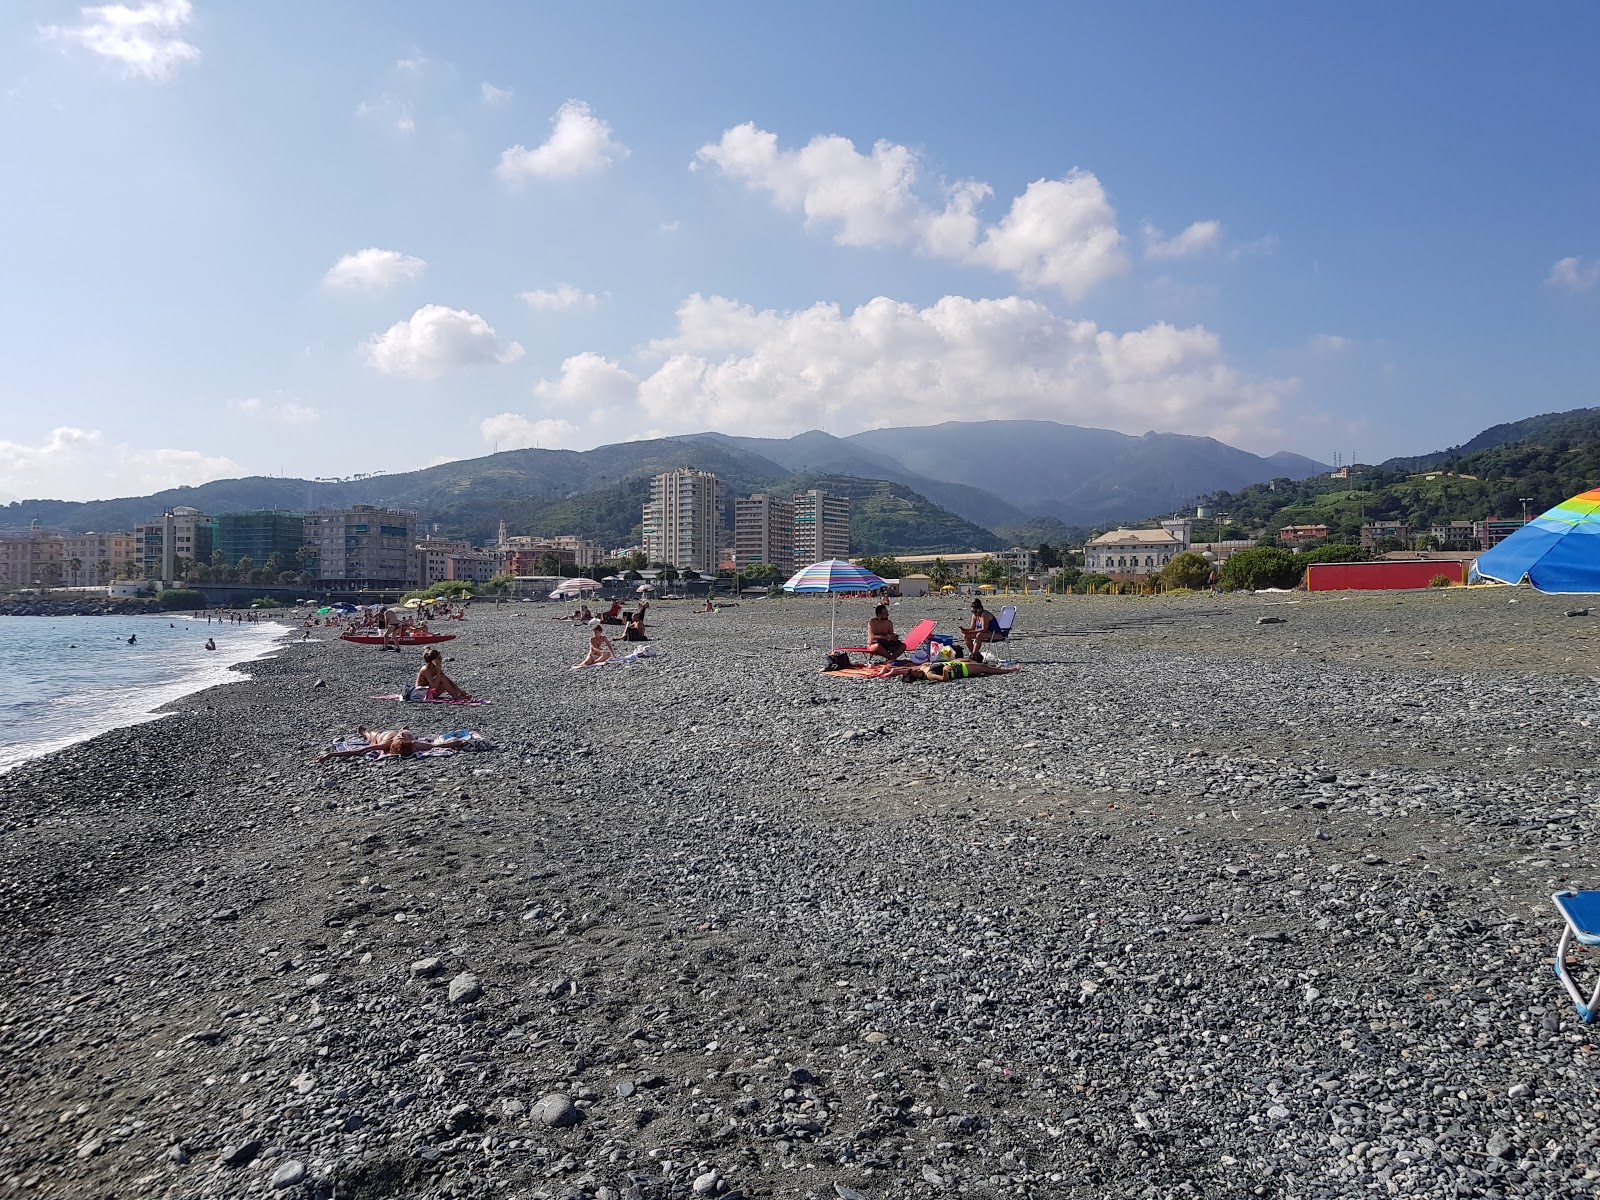 Spiaggia Multedo'in fotoğrafı gri çakıl taşı yüzey ile